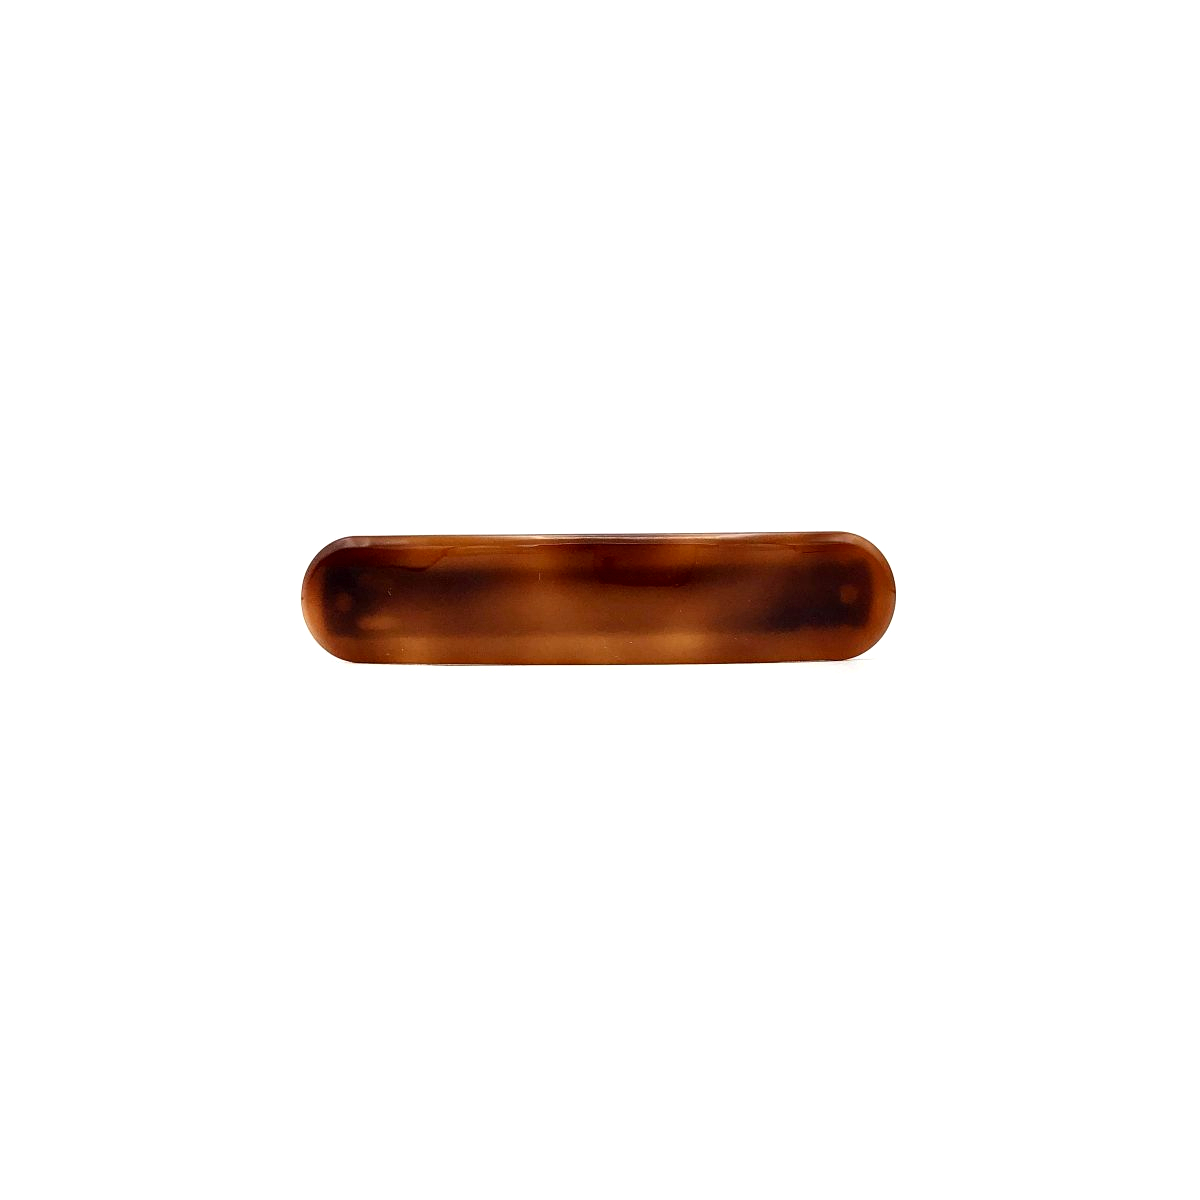 Haarspange rotbraun - klein, paralleloval - 7,7 cm